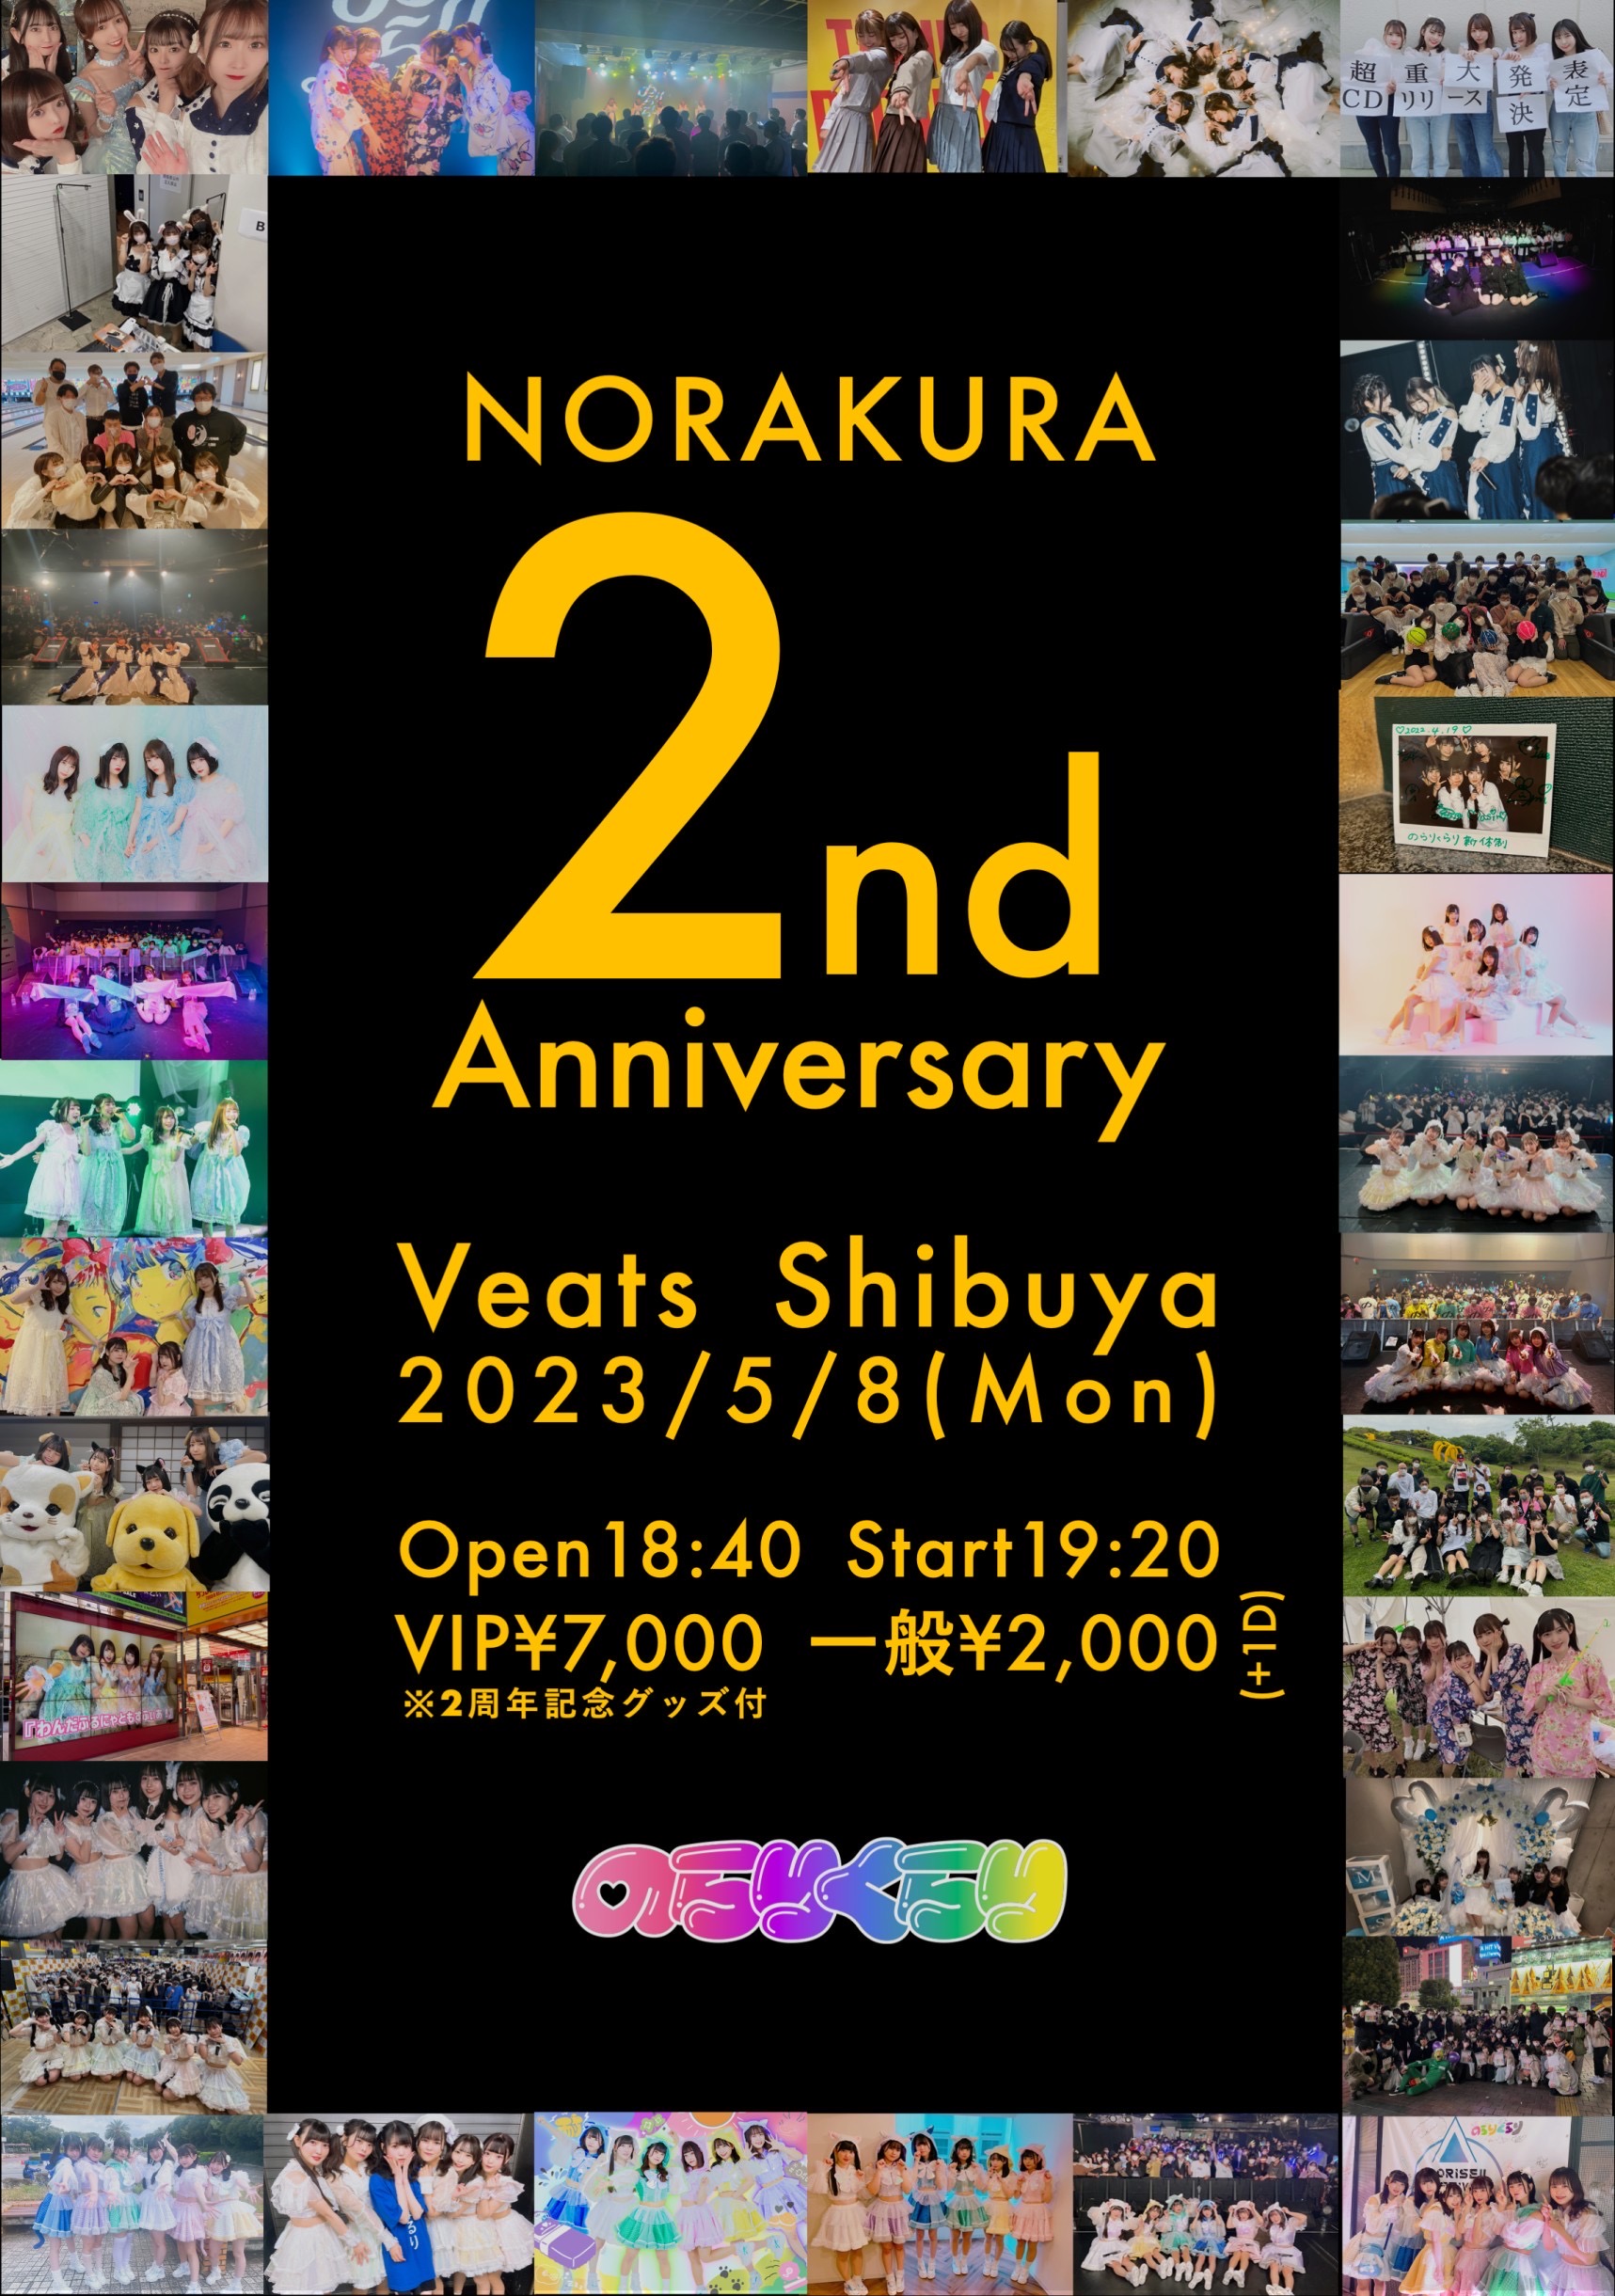 NORAKURA 2nd Anniversary